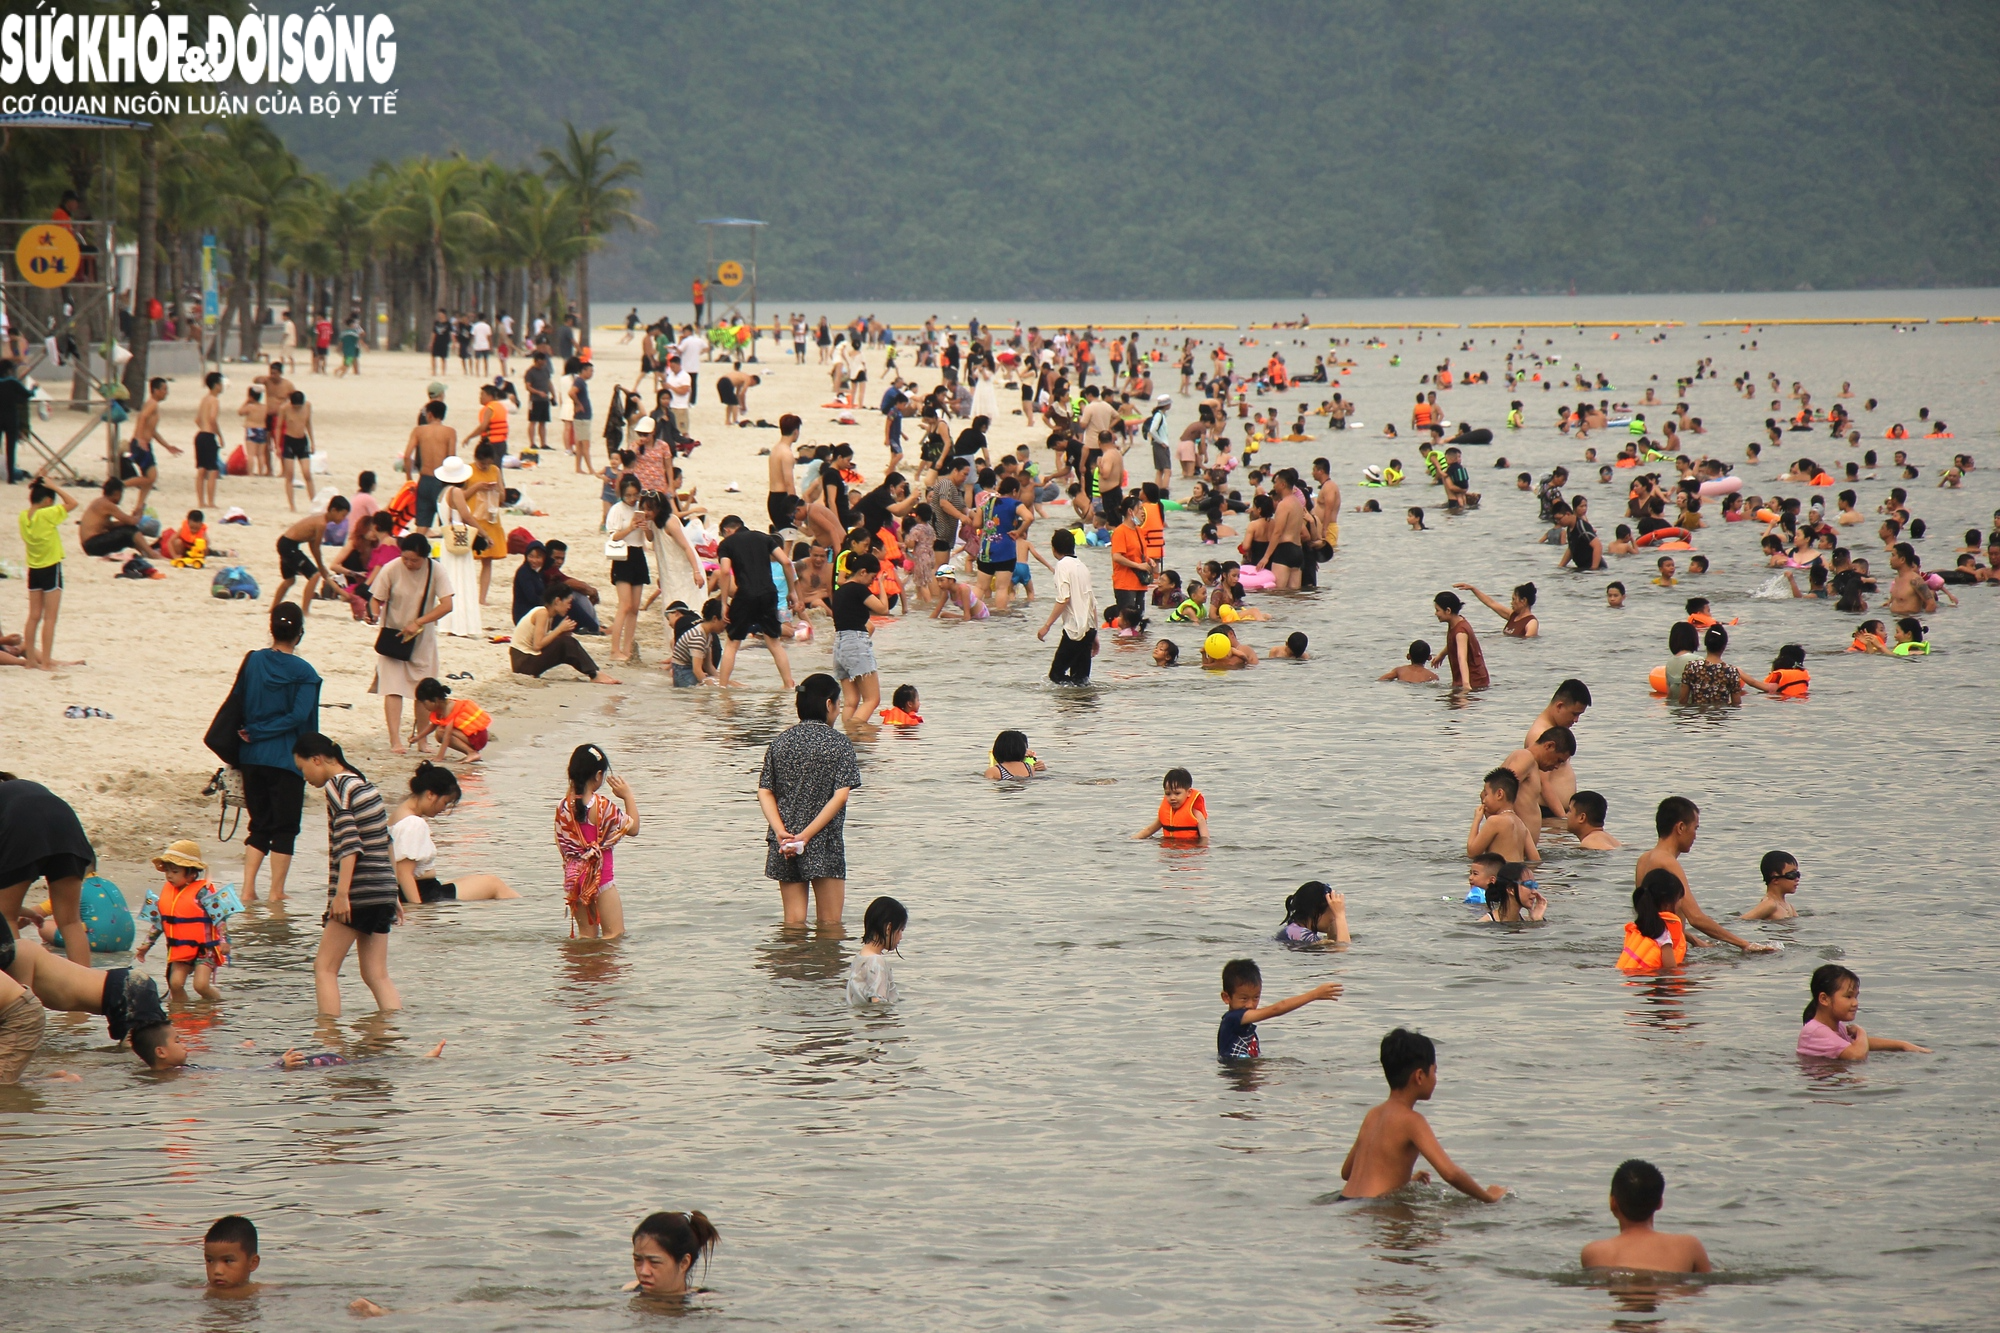 Chùm ảnh, video: Hàng nghìn du khác vô tư check in, tắm biển ở Hạ Long trước khi bão về - Ảnh 20.